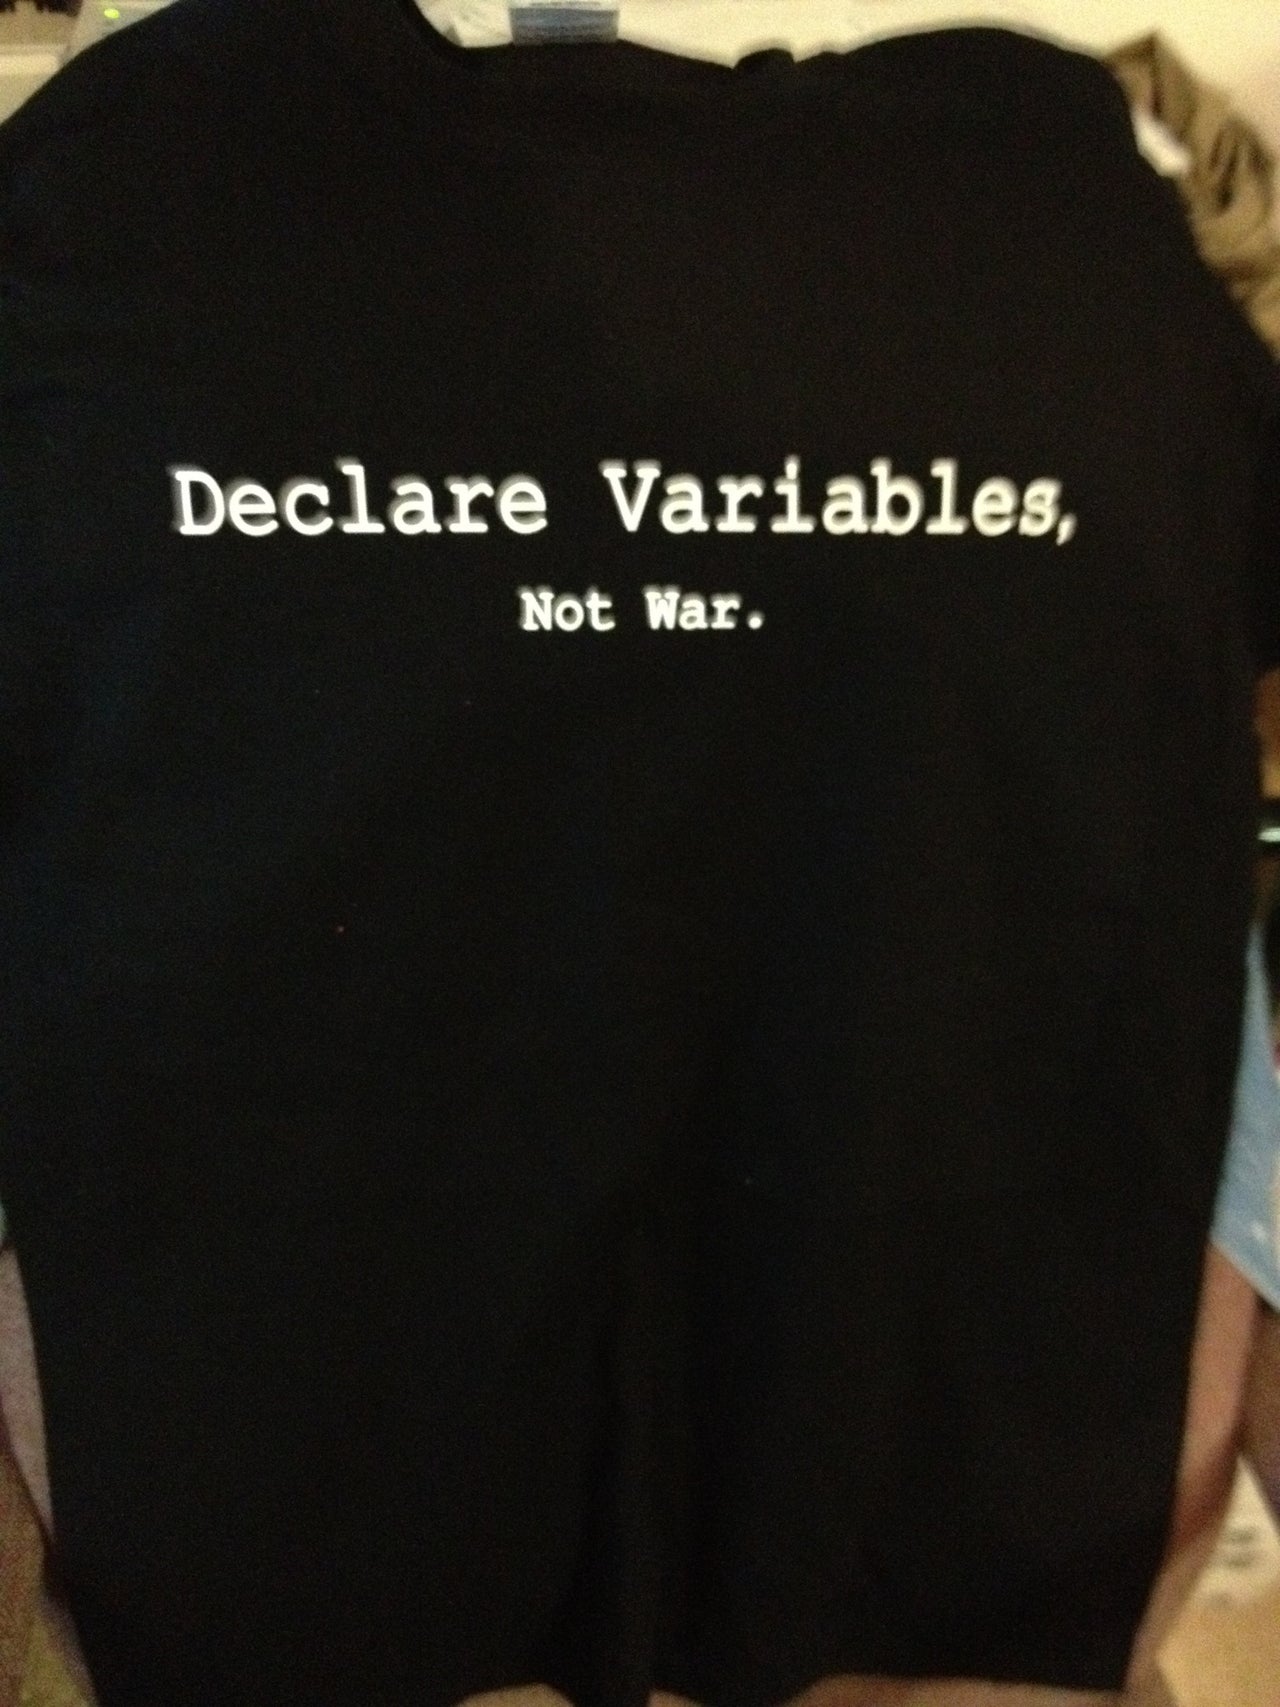 Declare Variables, Not War. Black Tshirt - TshirtNow.net - 2